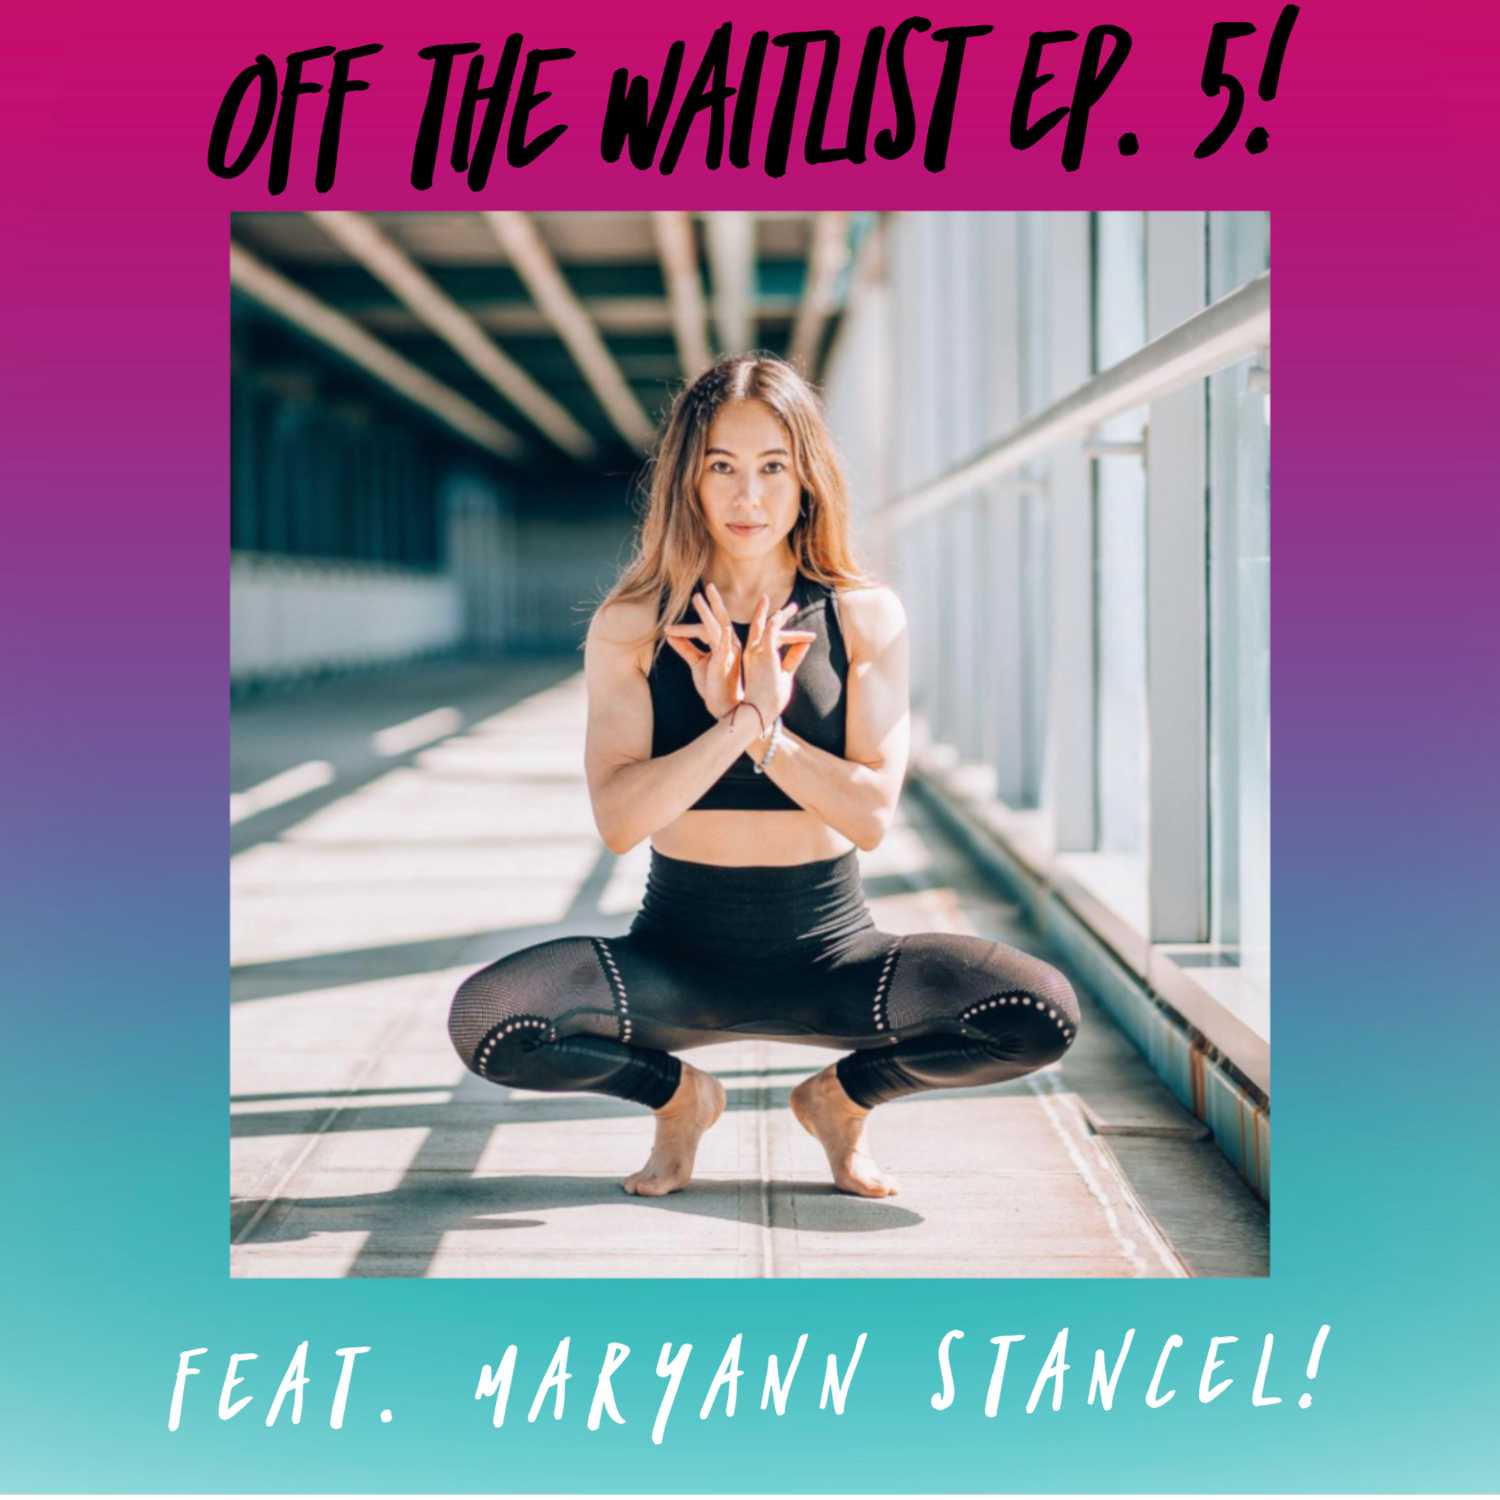 OTW Episode 5 feat. Maryann Stancel!